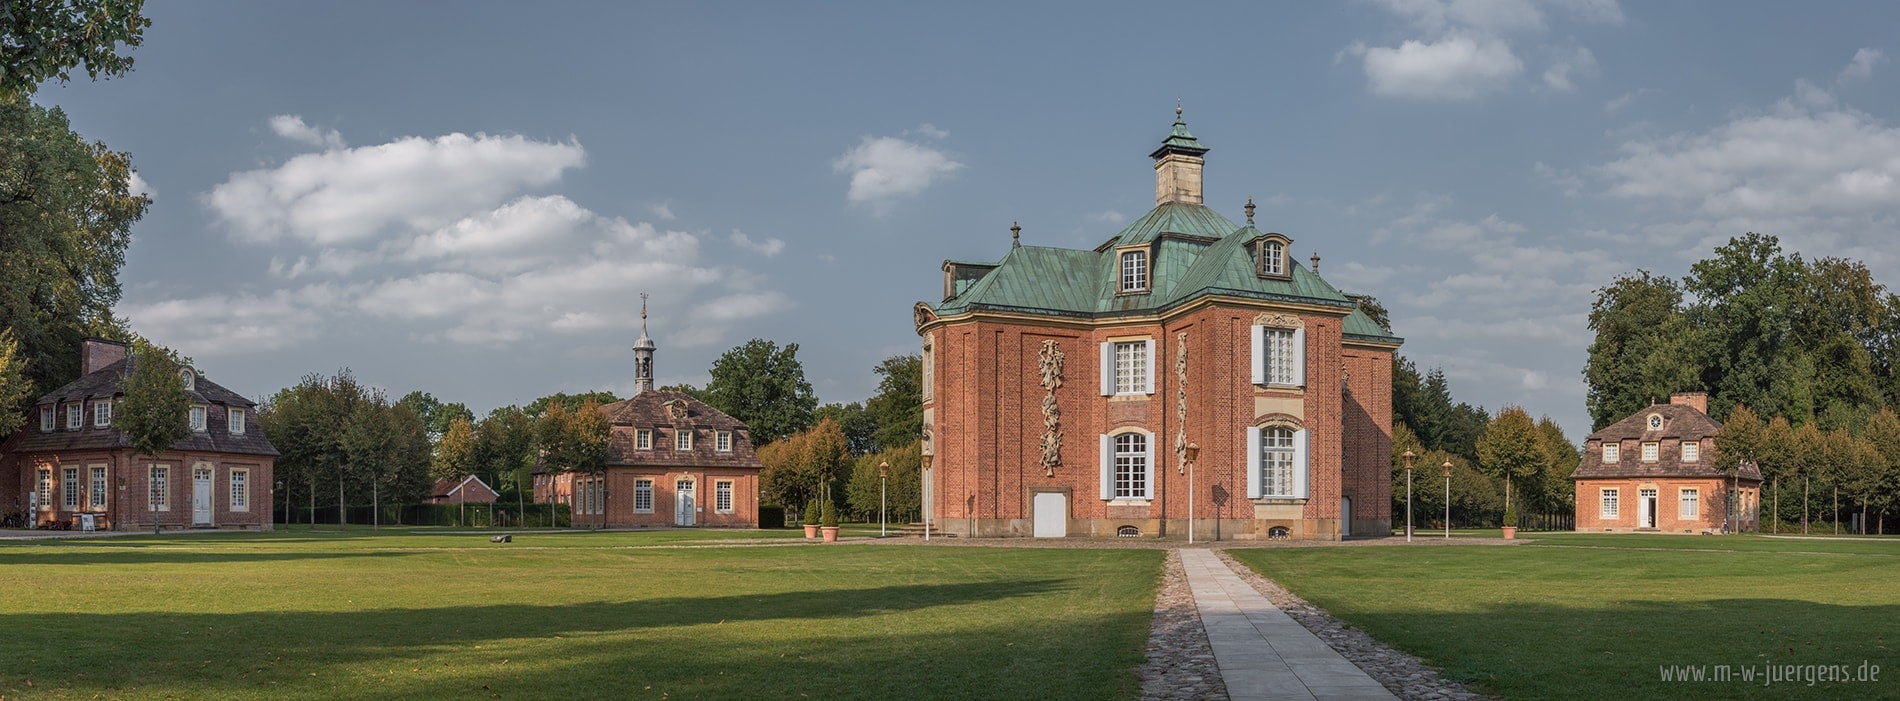 Schloss Clemenswerth Ausstellungen, Manfred W. Jürgens  Künstler Maler, Wismar